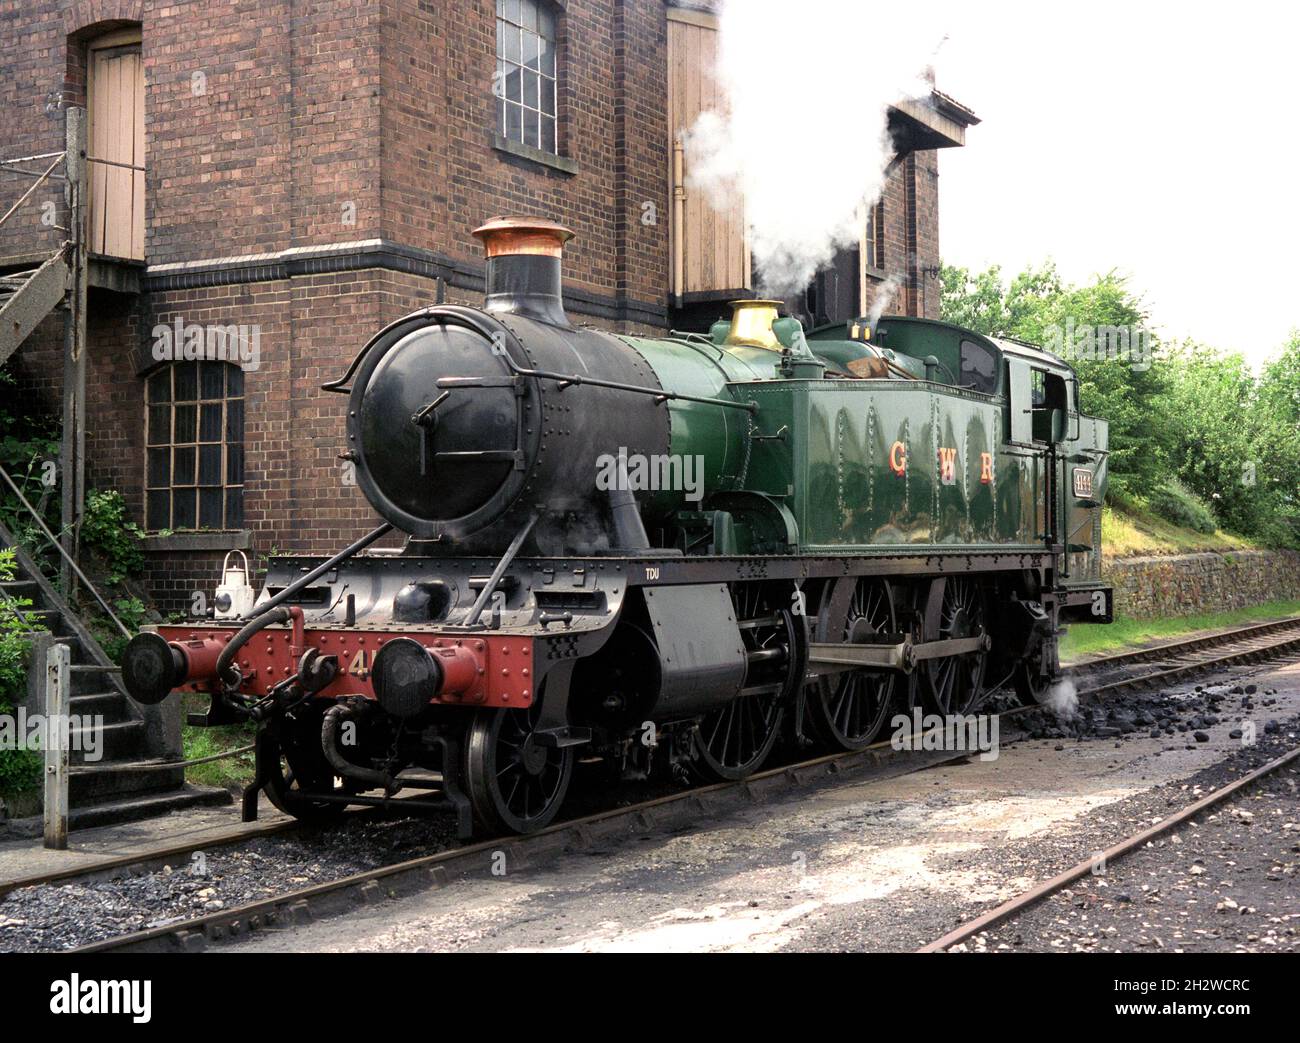 Locomotive à vapeur 4144 - classe BR 41xx - Didcot Railway Centre, Didcot, Oxfordshire, Angleterre, Royaume-Uni. Banque D'Images